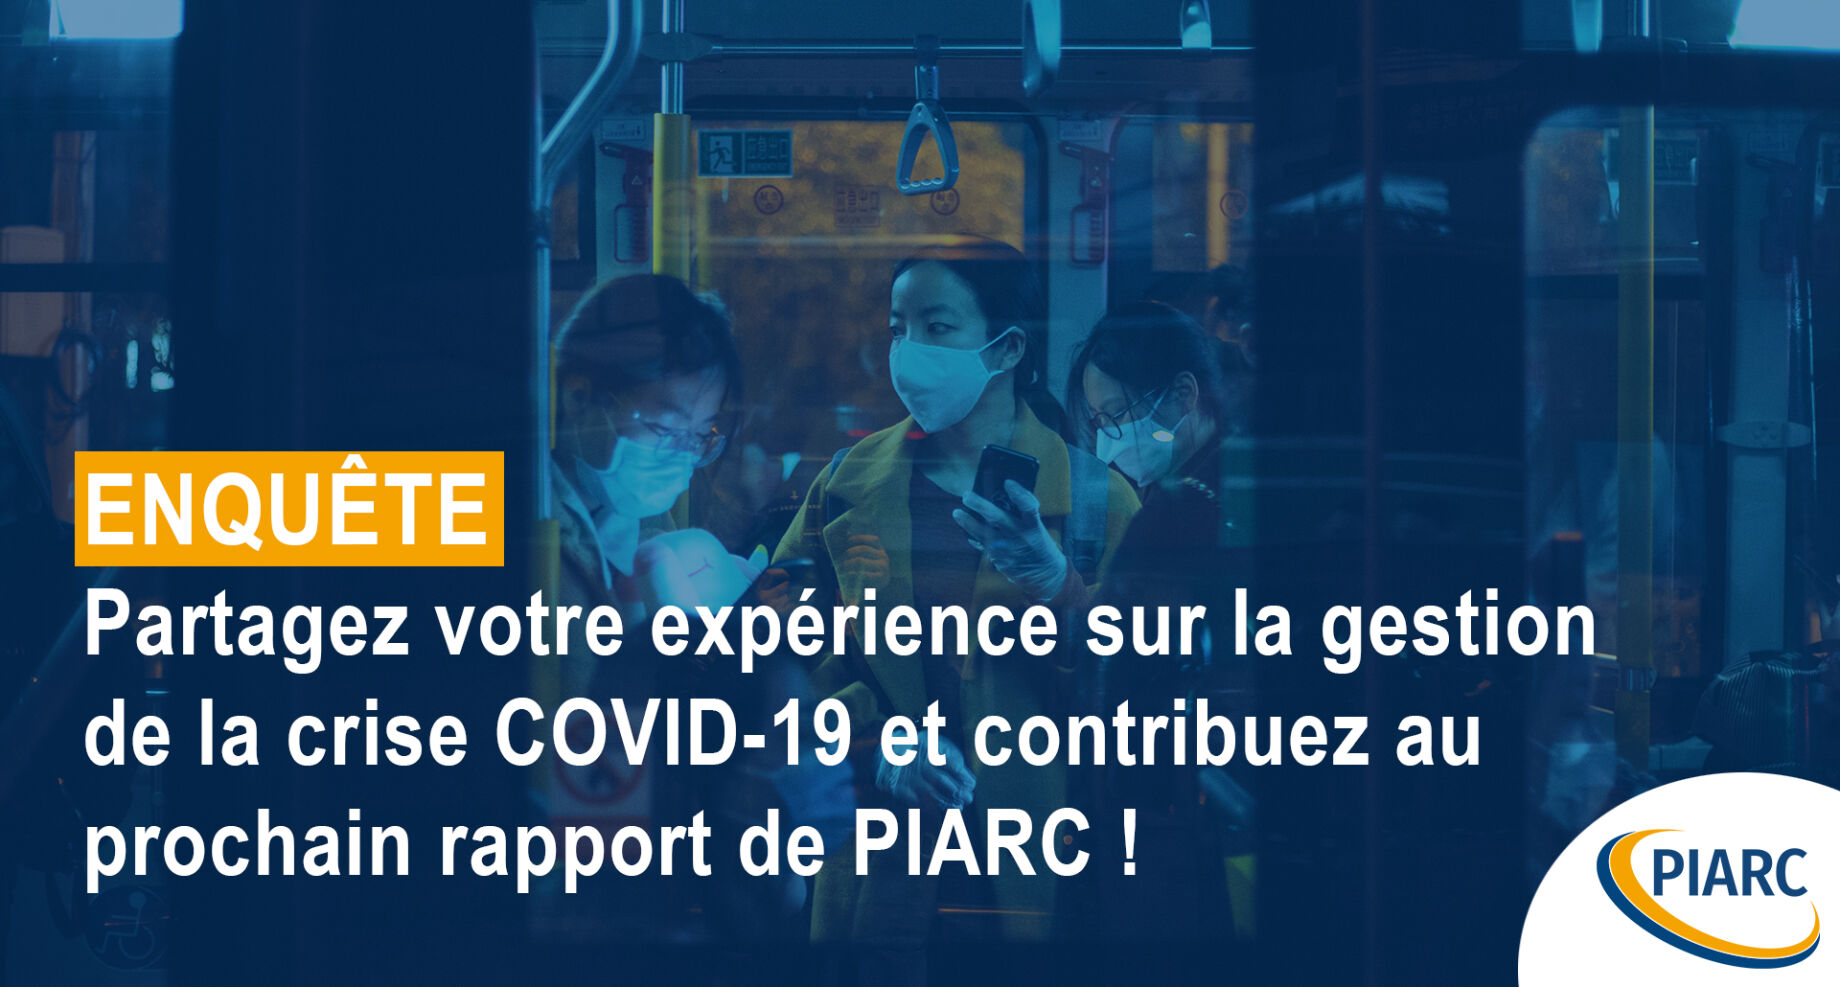 Crise COVID-19 - Partagez votre expérience avec PIARC !